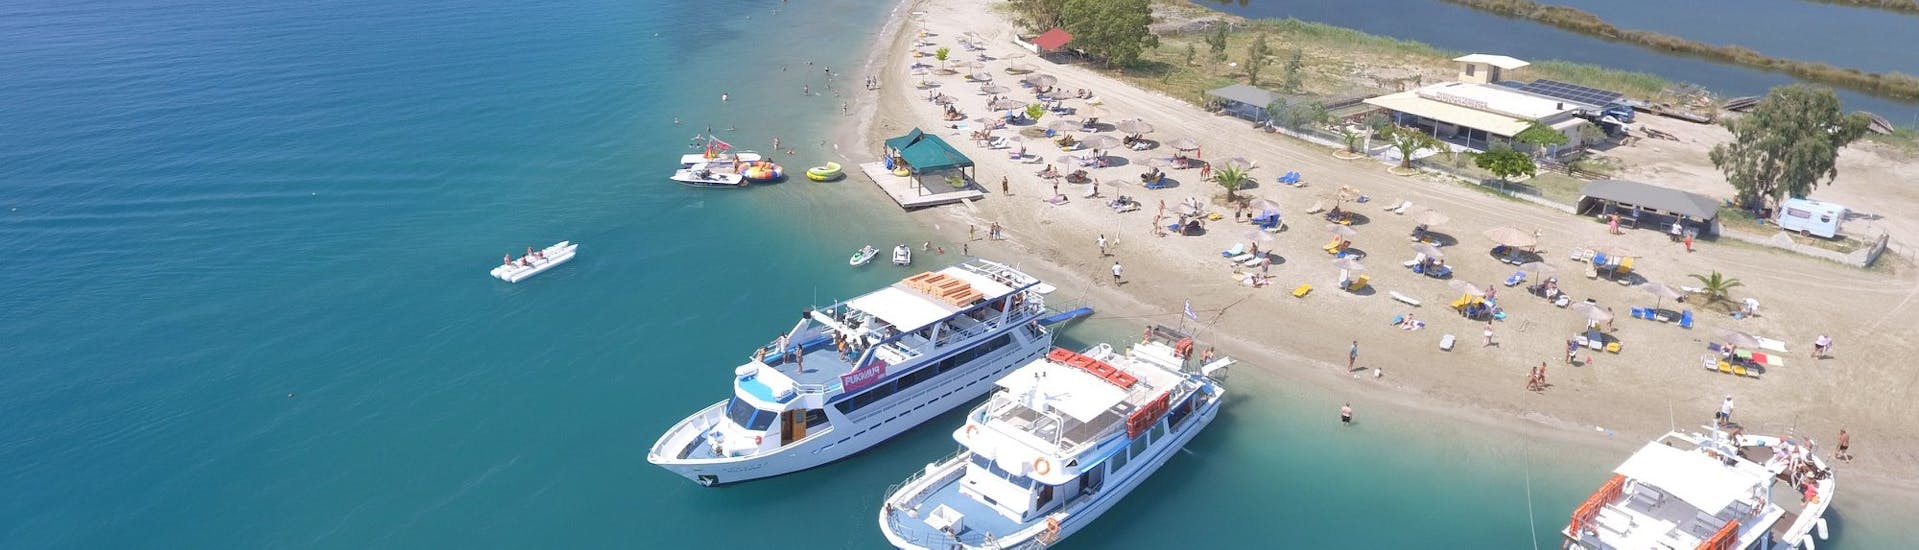 Balade en bateau Ville de Corfou - Vido island avec Baignade & Visites touristiques.